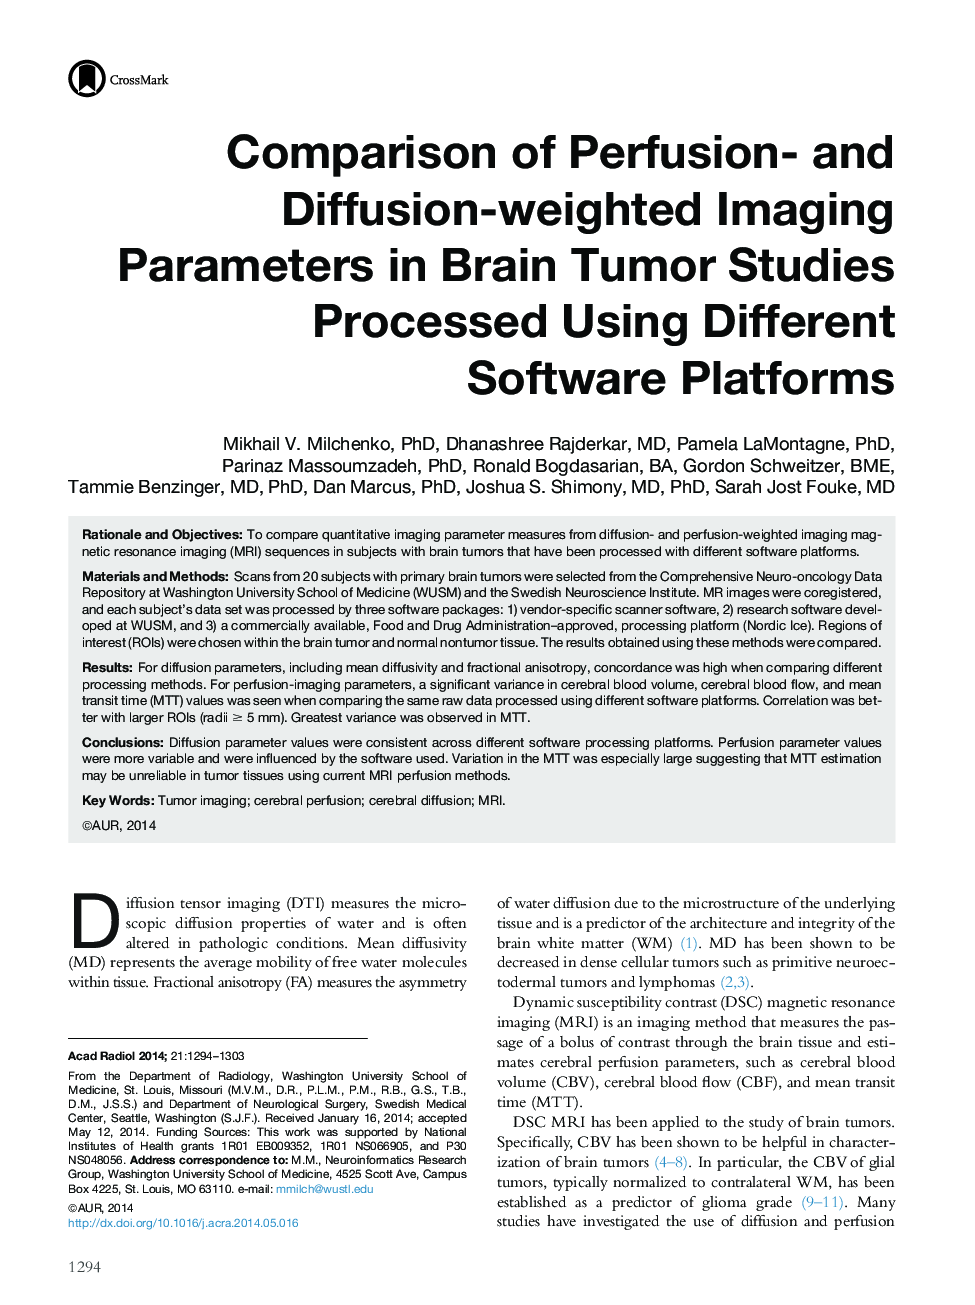 مقایسه پارامترهای تصویربرداری تصویر توزیع و توزیع در مطالعات تومور مغزی با استفاده از بسترهای نرم افزاری مختلف 